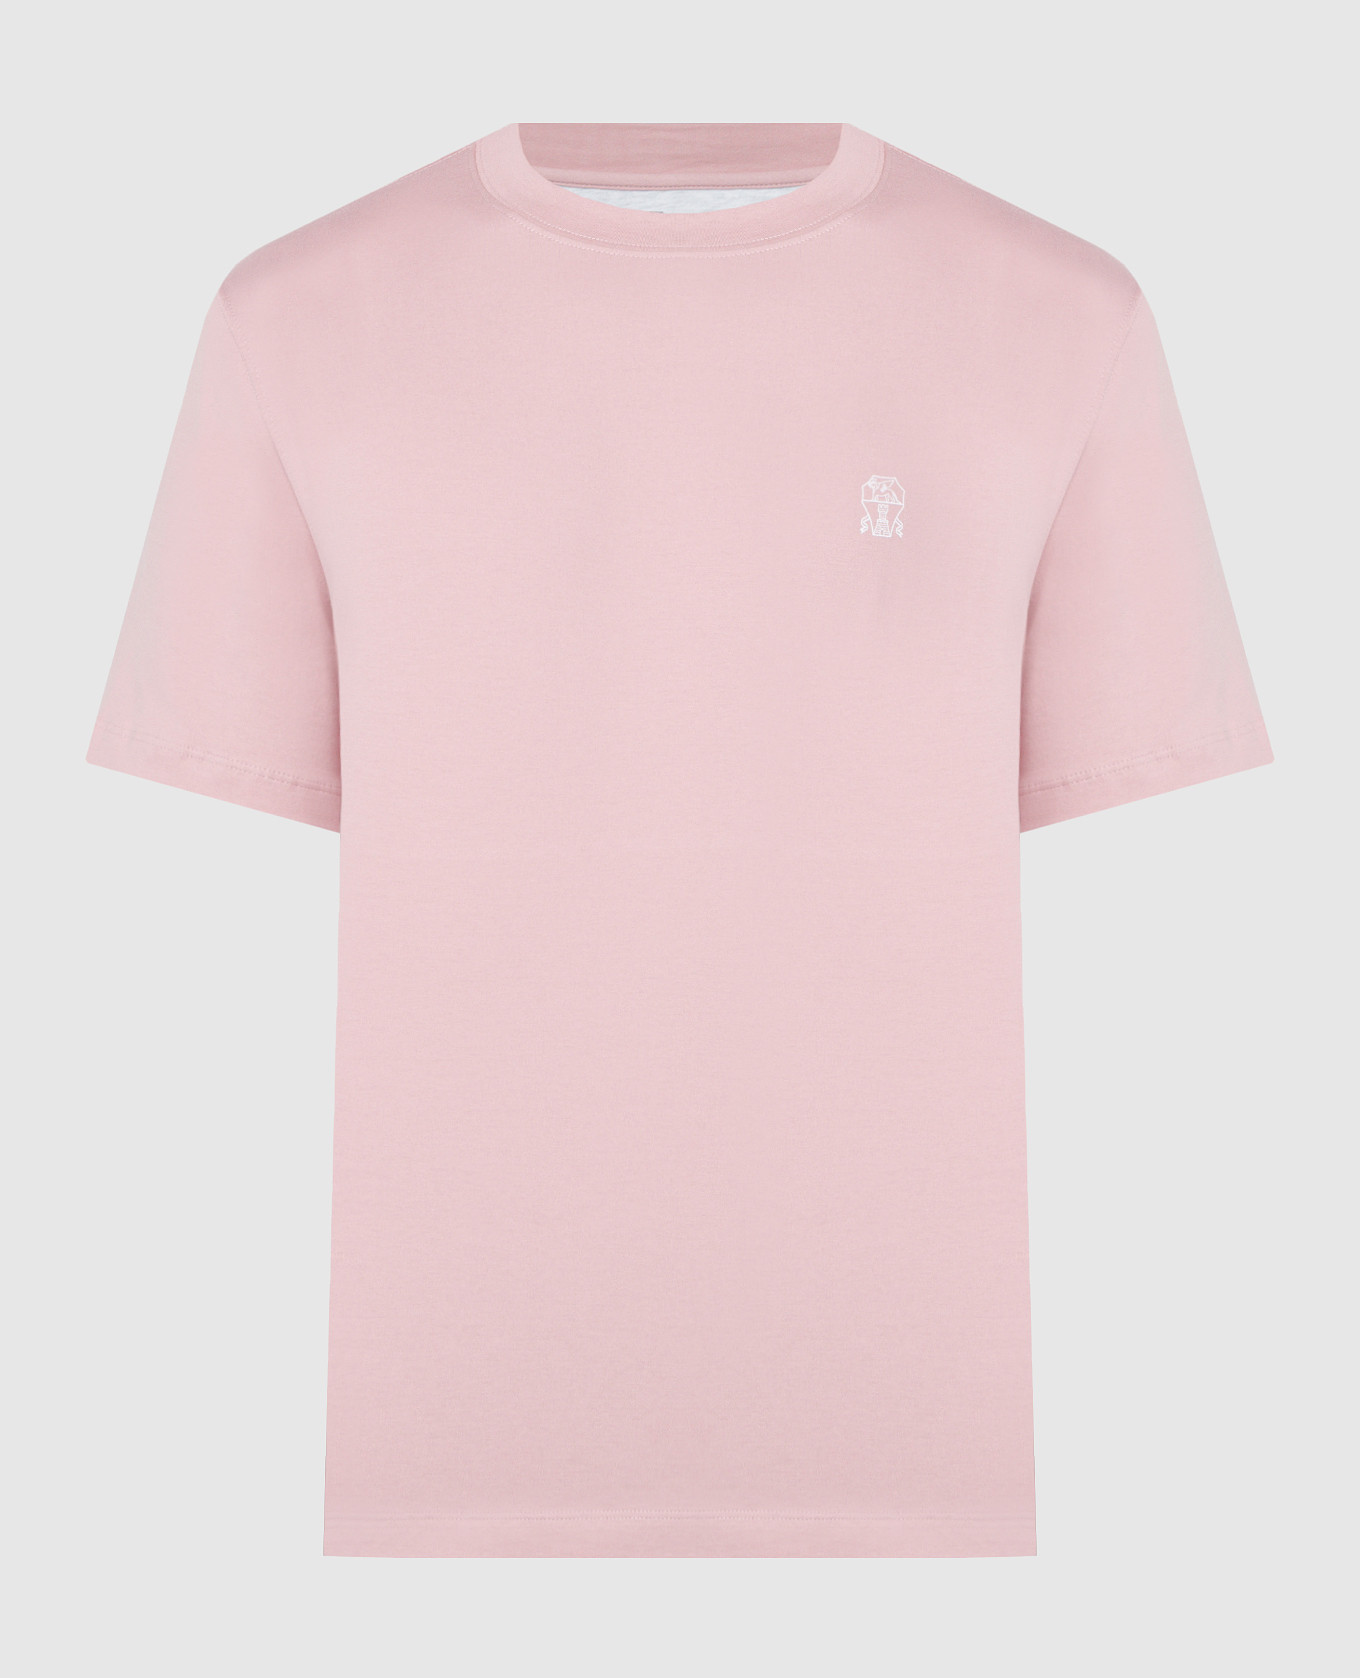 Розовая футболка с принтом логотип эмблемы.